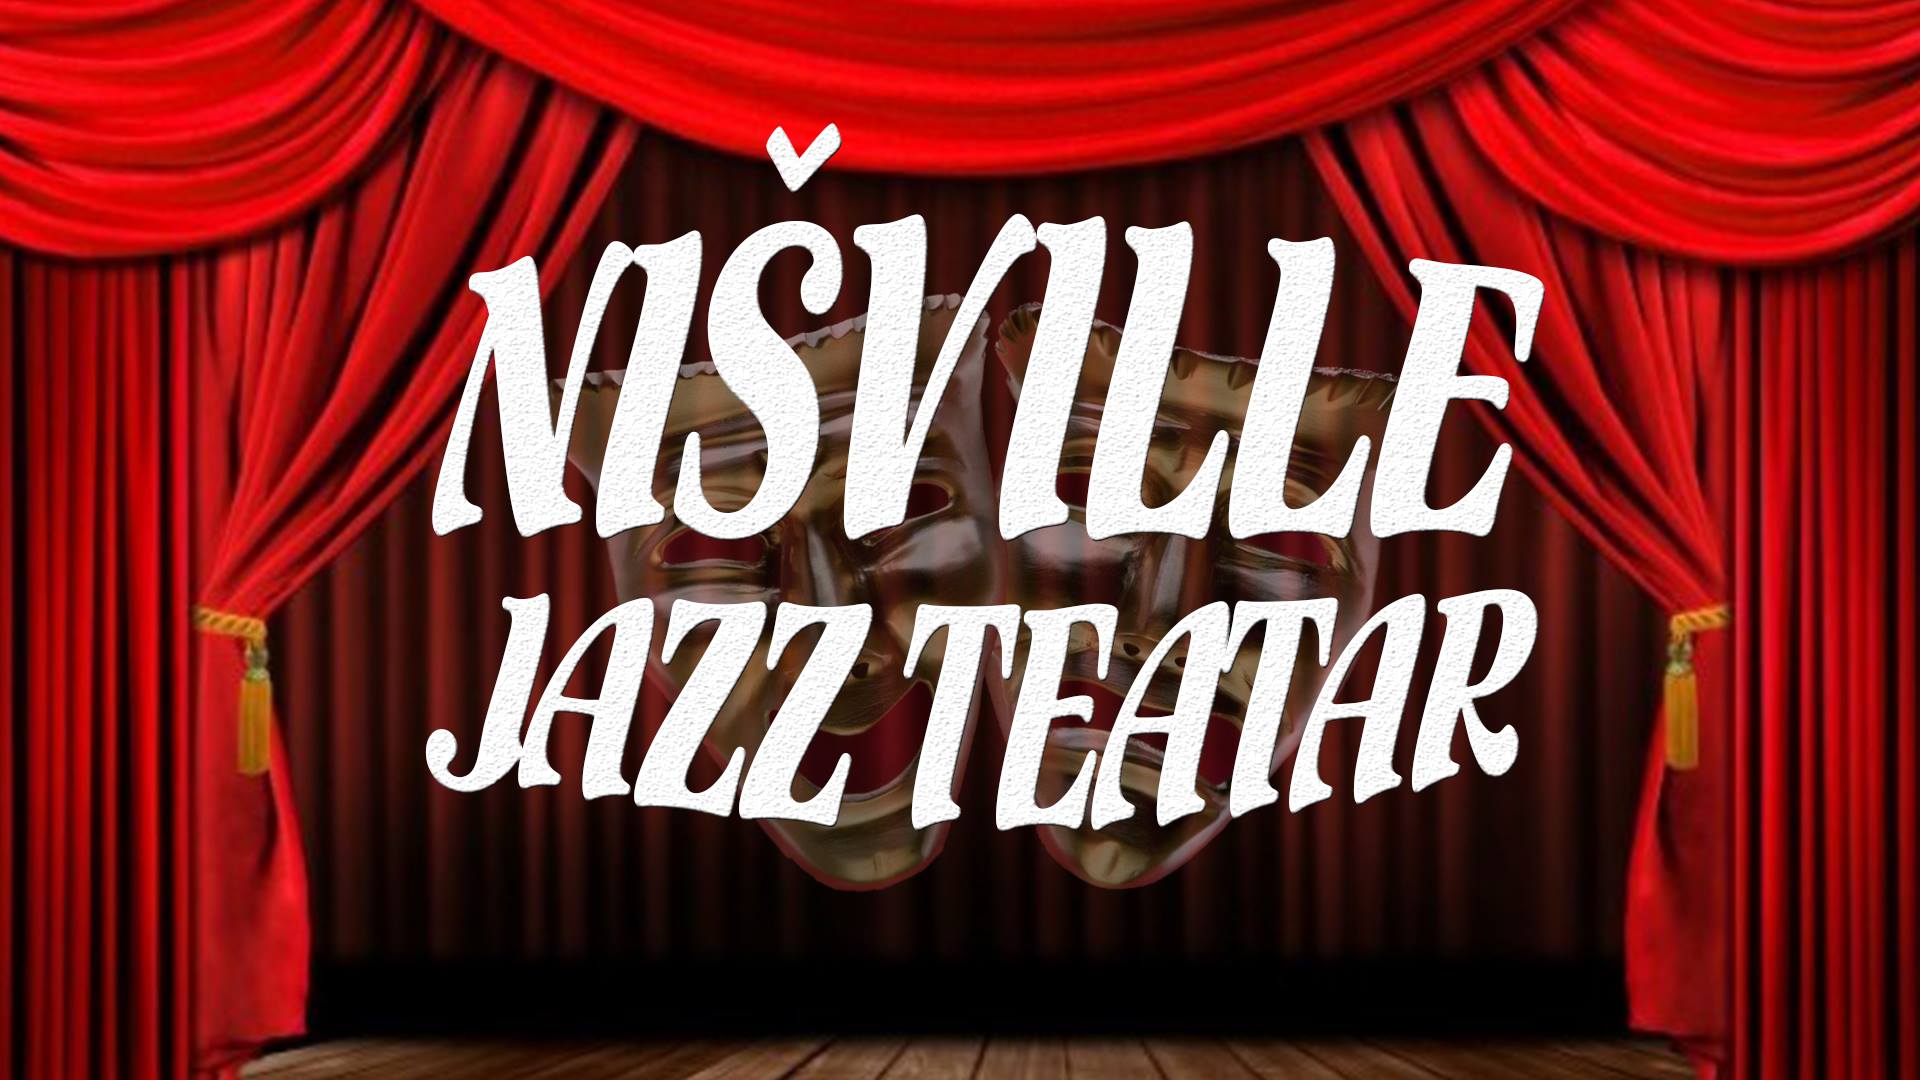 Nisville Jazz Theater